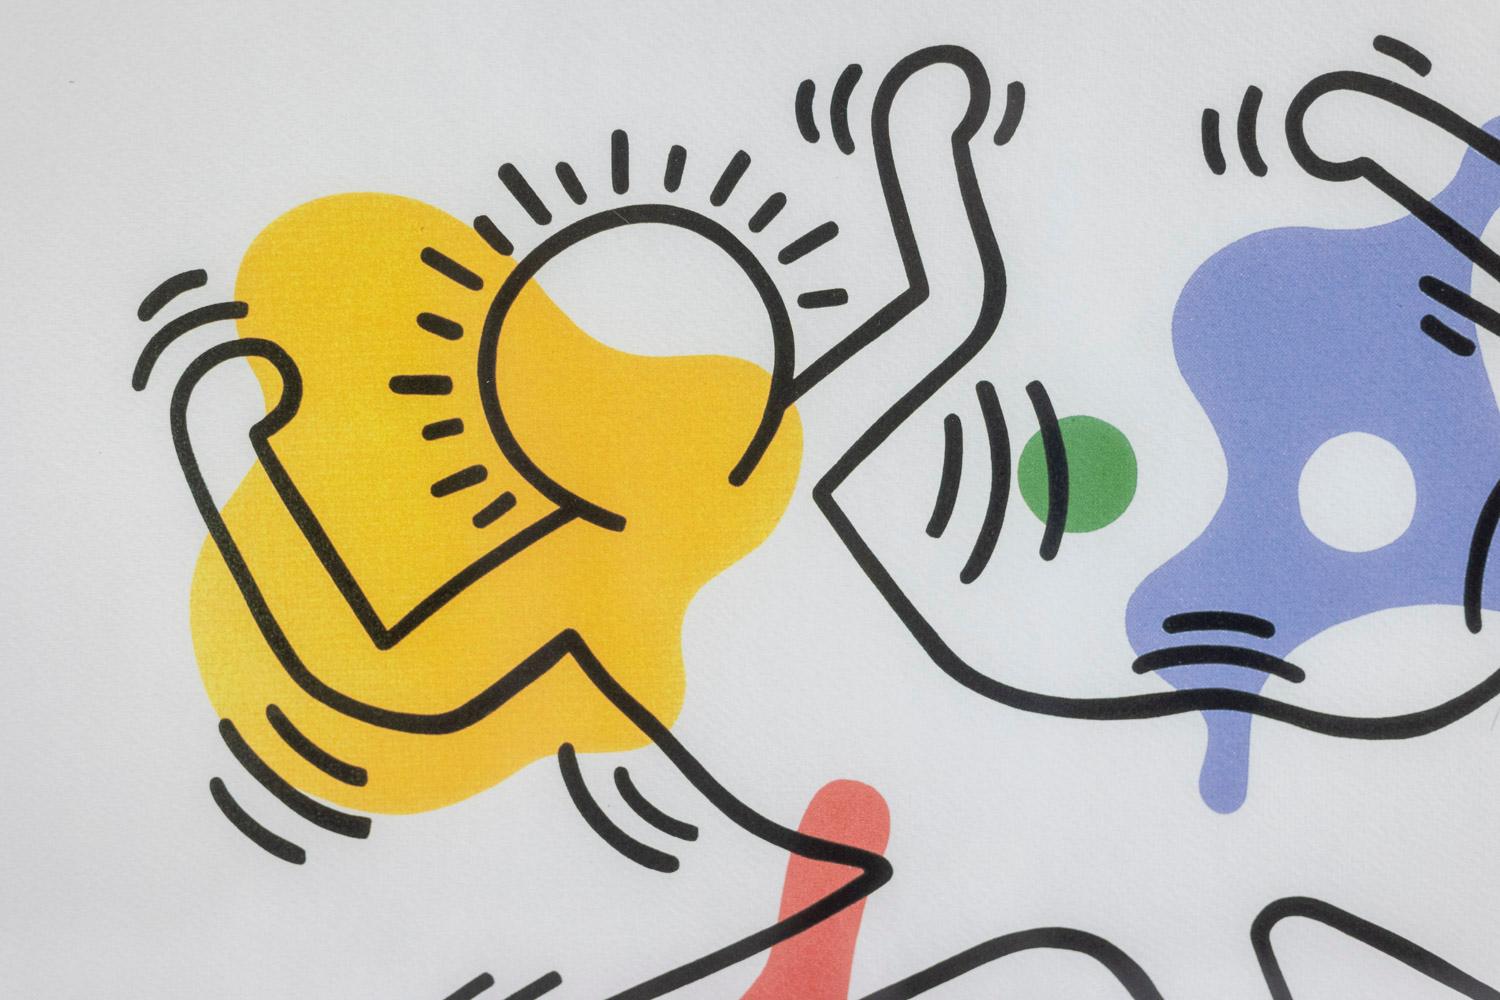 Keith Haring, signiert und nummeriert.

Abstrakter Siebdruck, der schematische Figuren andeutet, in mehrfarbigen Tönen in seinem blonden Eichenrahmen.

Nummeriert 75/150.

Amerikanische Arbeiten aus den 1990er Jahren.

Abmessungen: B 50 x H 70 x T 2